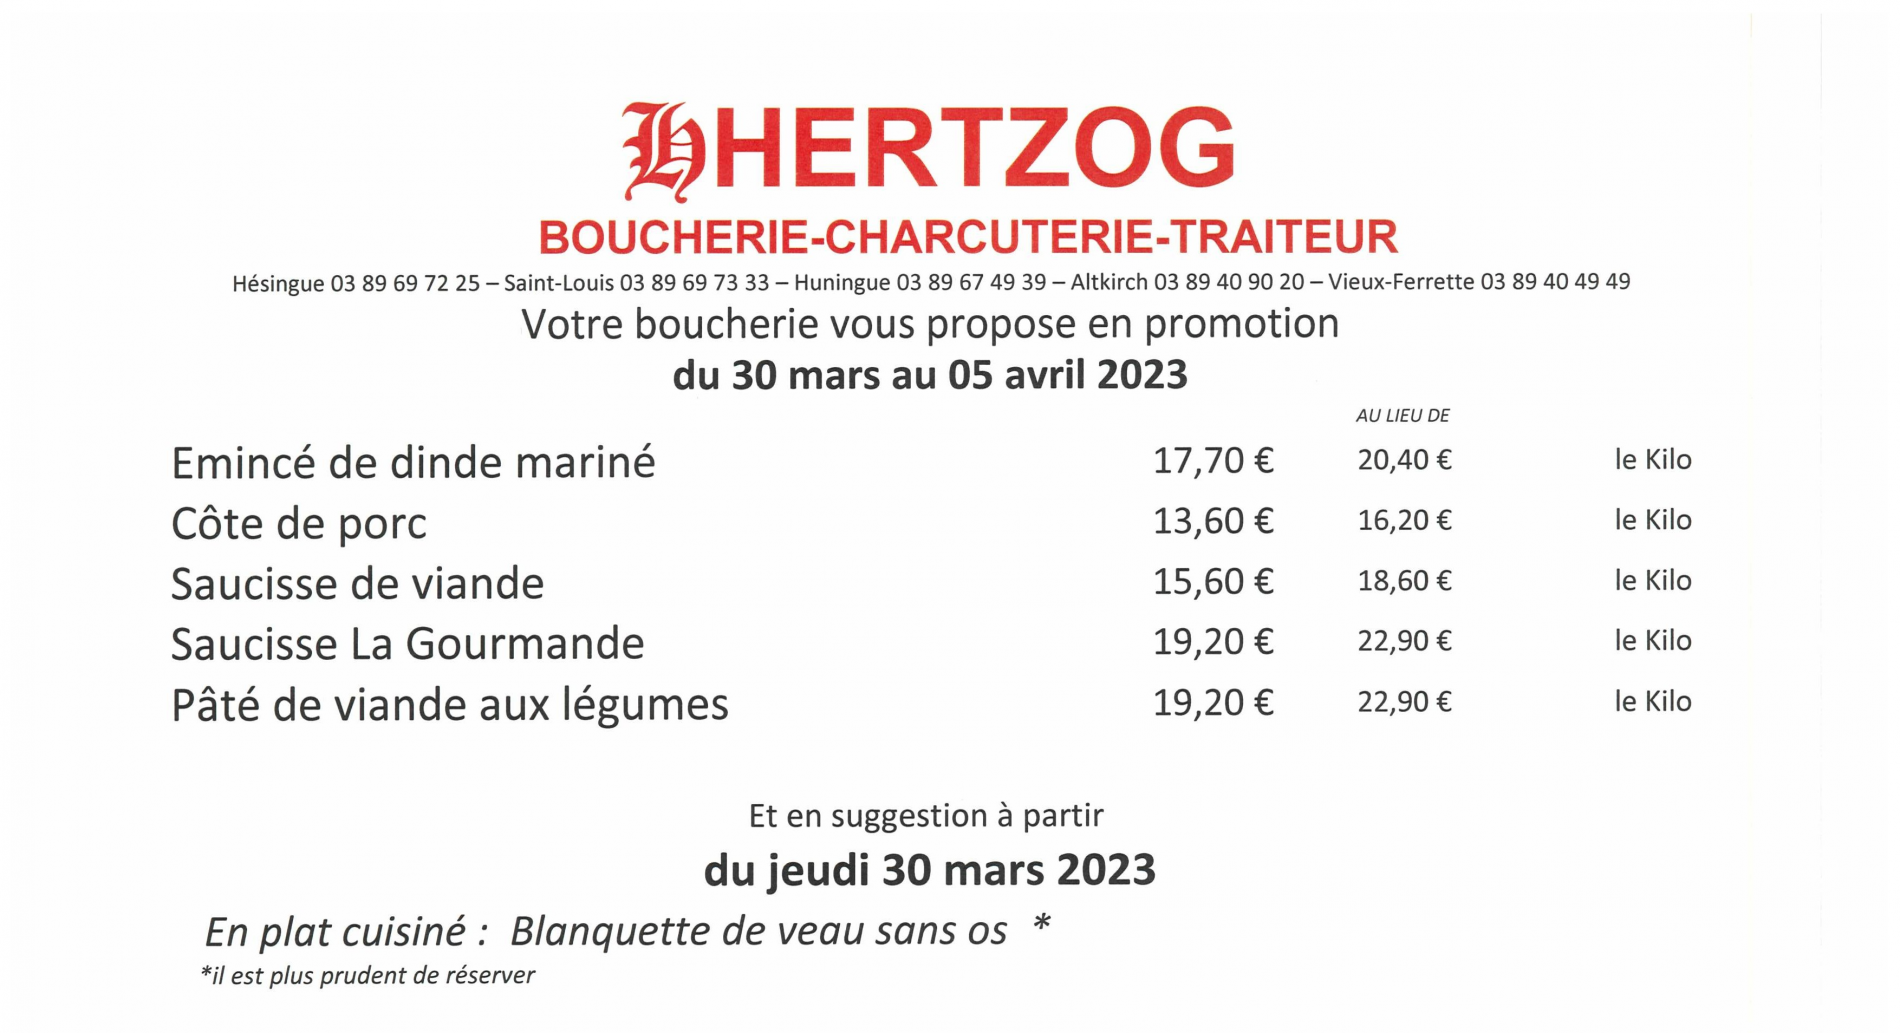 BOUCHERIE HERTZOG - Saint-Louis : Promotions du 30/03 au 05/04